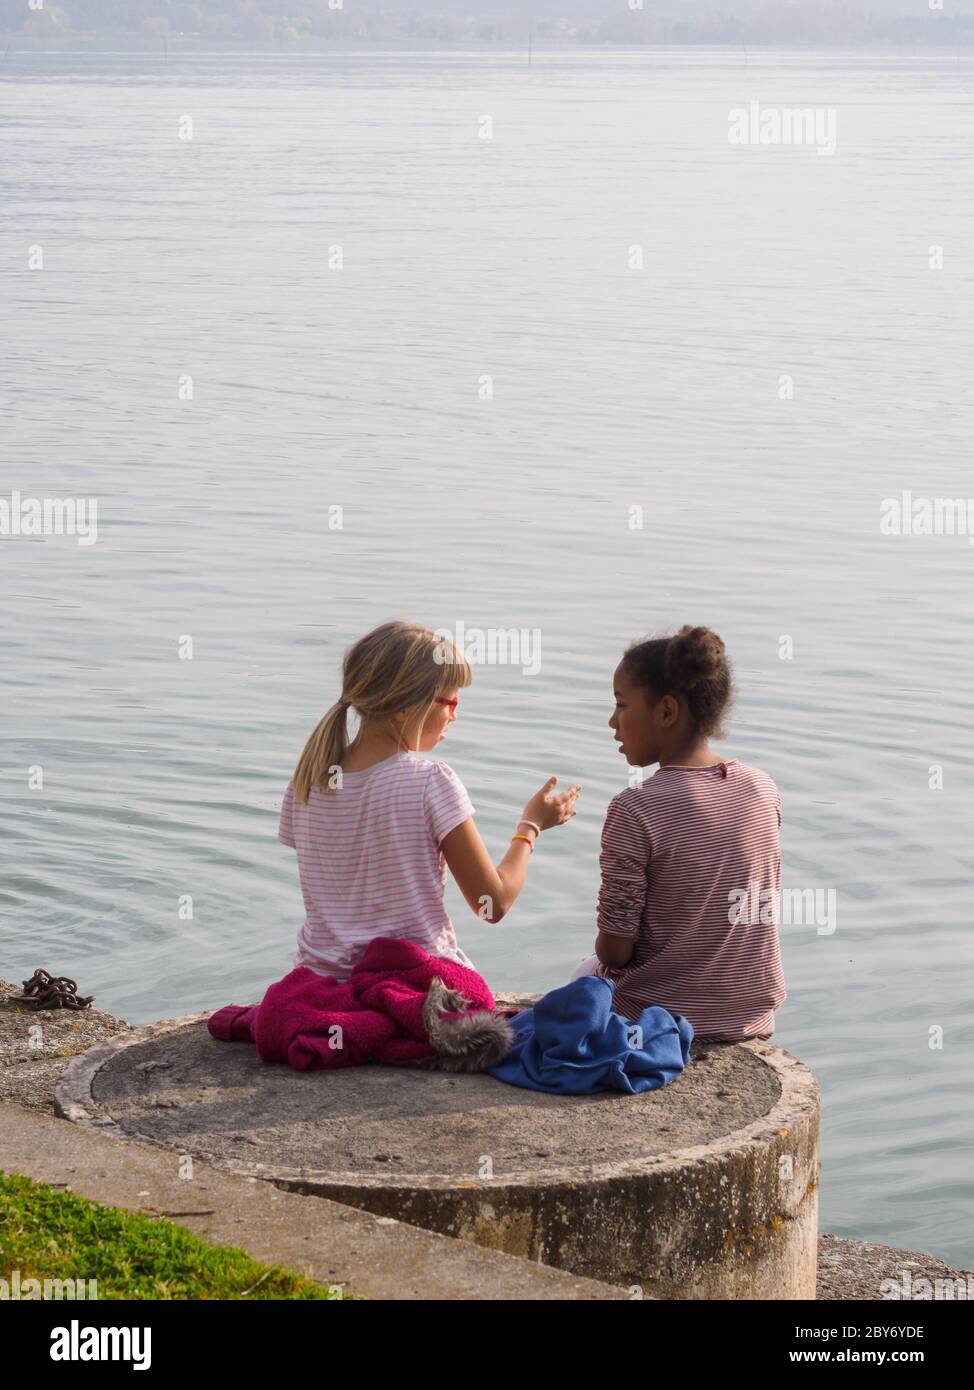 Zwei kleine Mädchen, eine Blondine und die andere schwarz, sitzen am Rande eines Sees in Italien und sprechen miteinander... Stockfoto